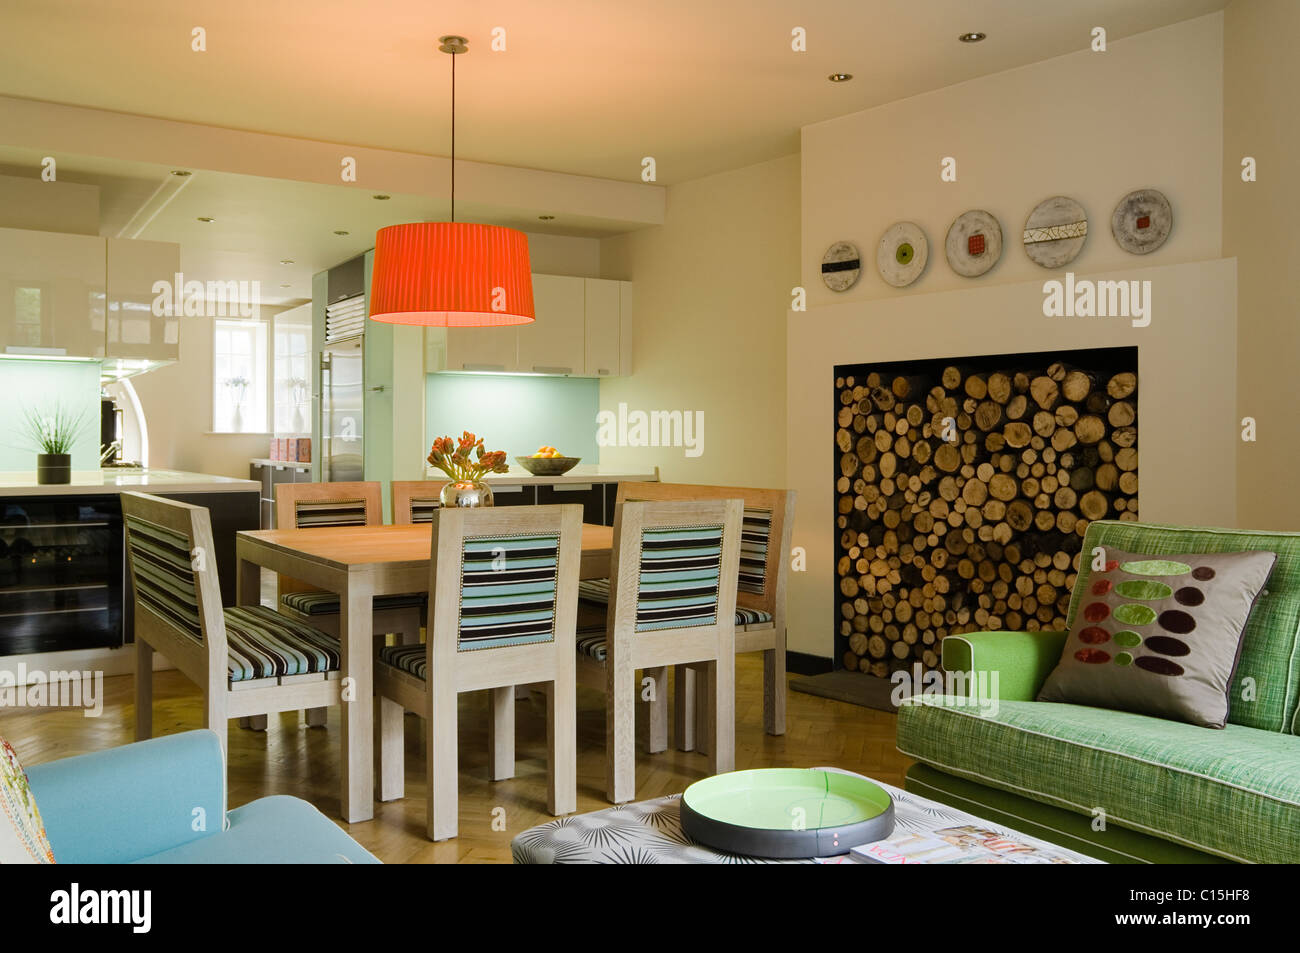 Große orange Lampenschirm über dem Esstisch in offene Küche Zimmer mit Brennholz Stockfoto